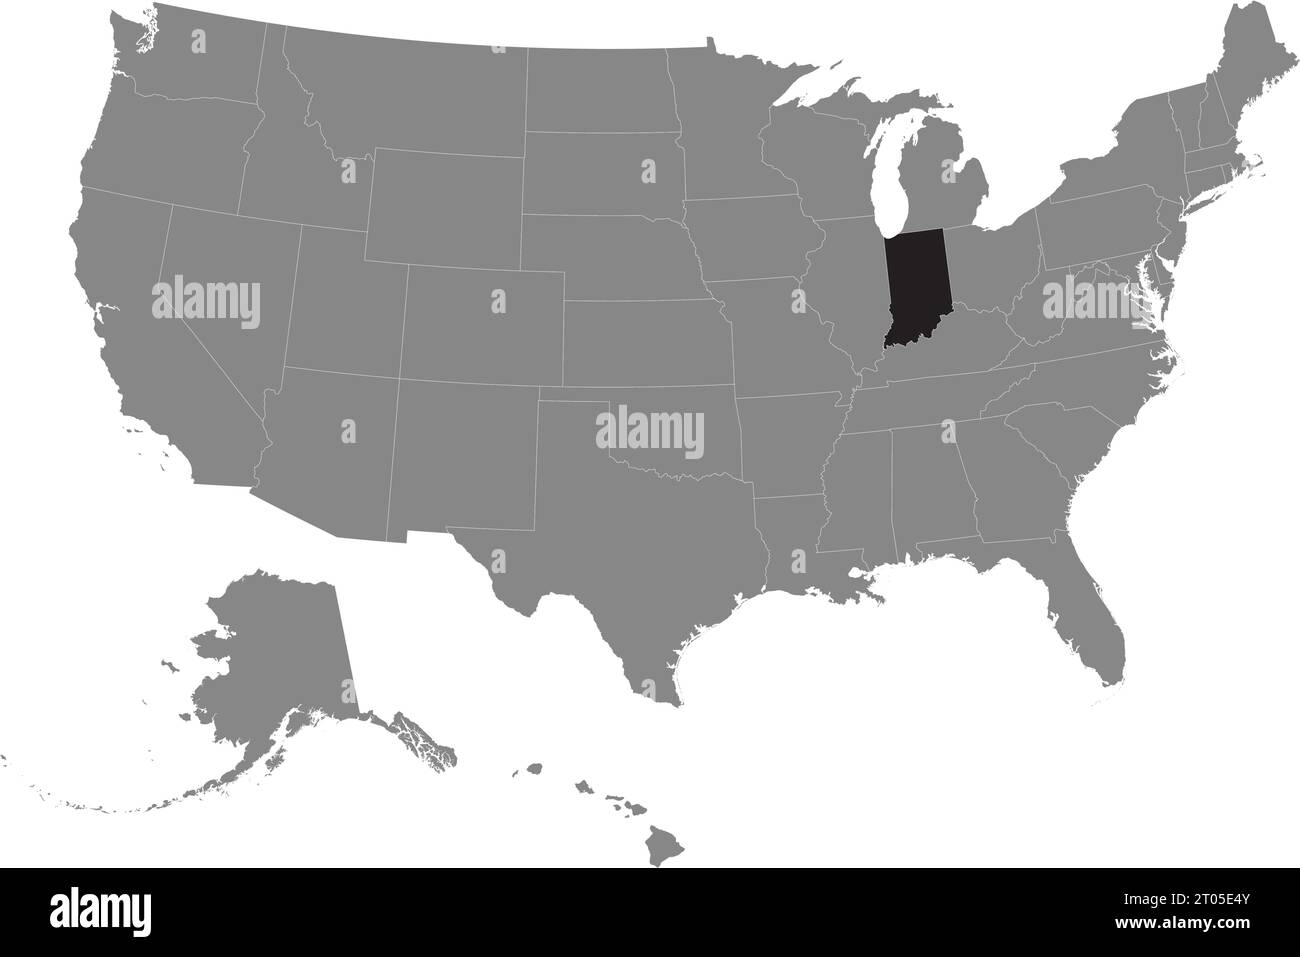 Schwarze CMYK-Bundeskarte von INDIANA in detaillierter grauer, leerer politischer Karte der Vereinigten Staaten von Amerika auf transparentem Hintergrund Stock Vektor